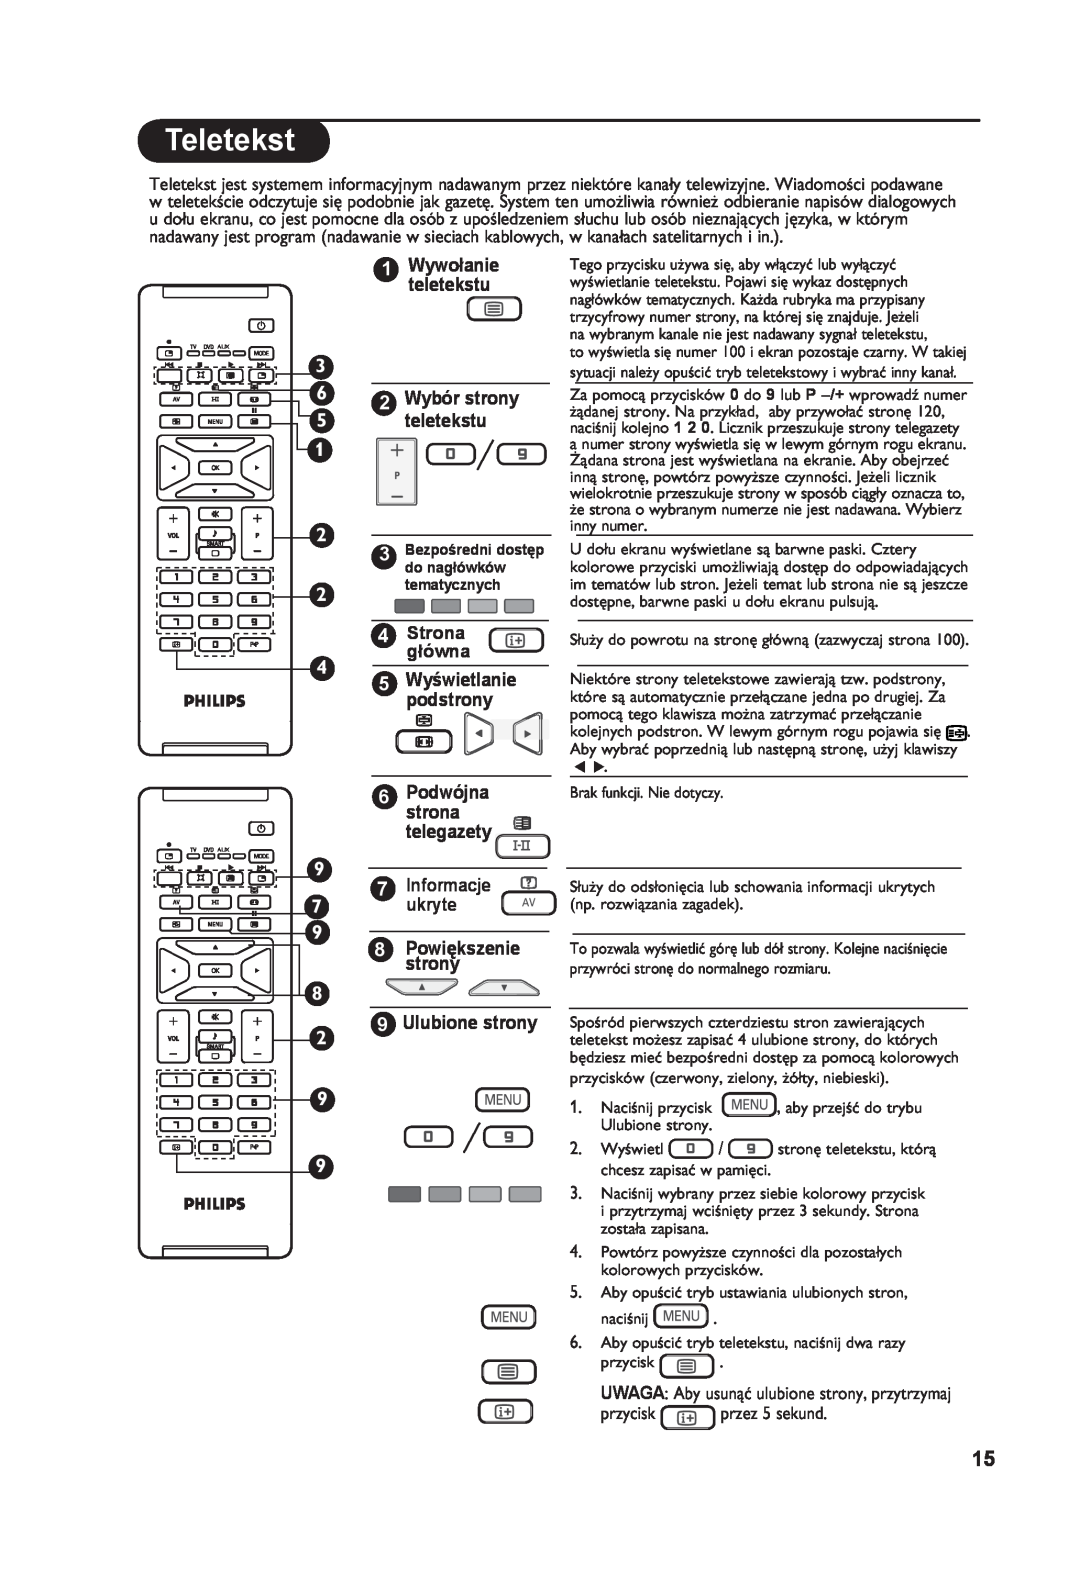 Philips 26PF7321 manual Teletekst, Stronagłówna, Informacje, ukryte, Ulubione strony, 2 Wybór strony teletekstu 